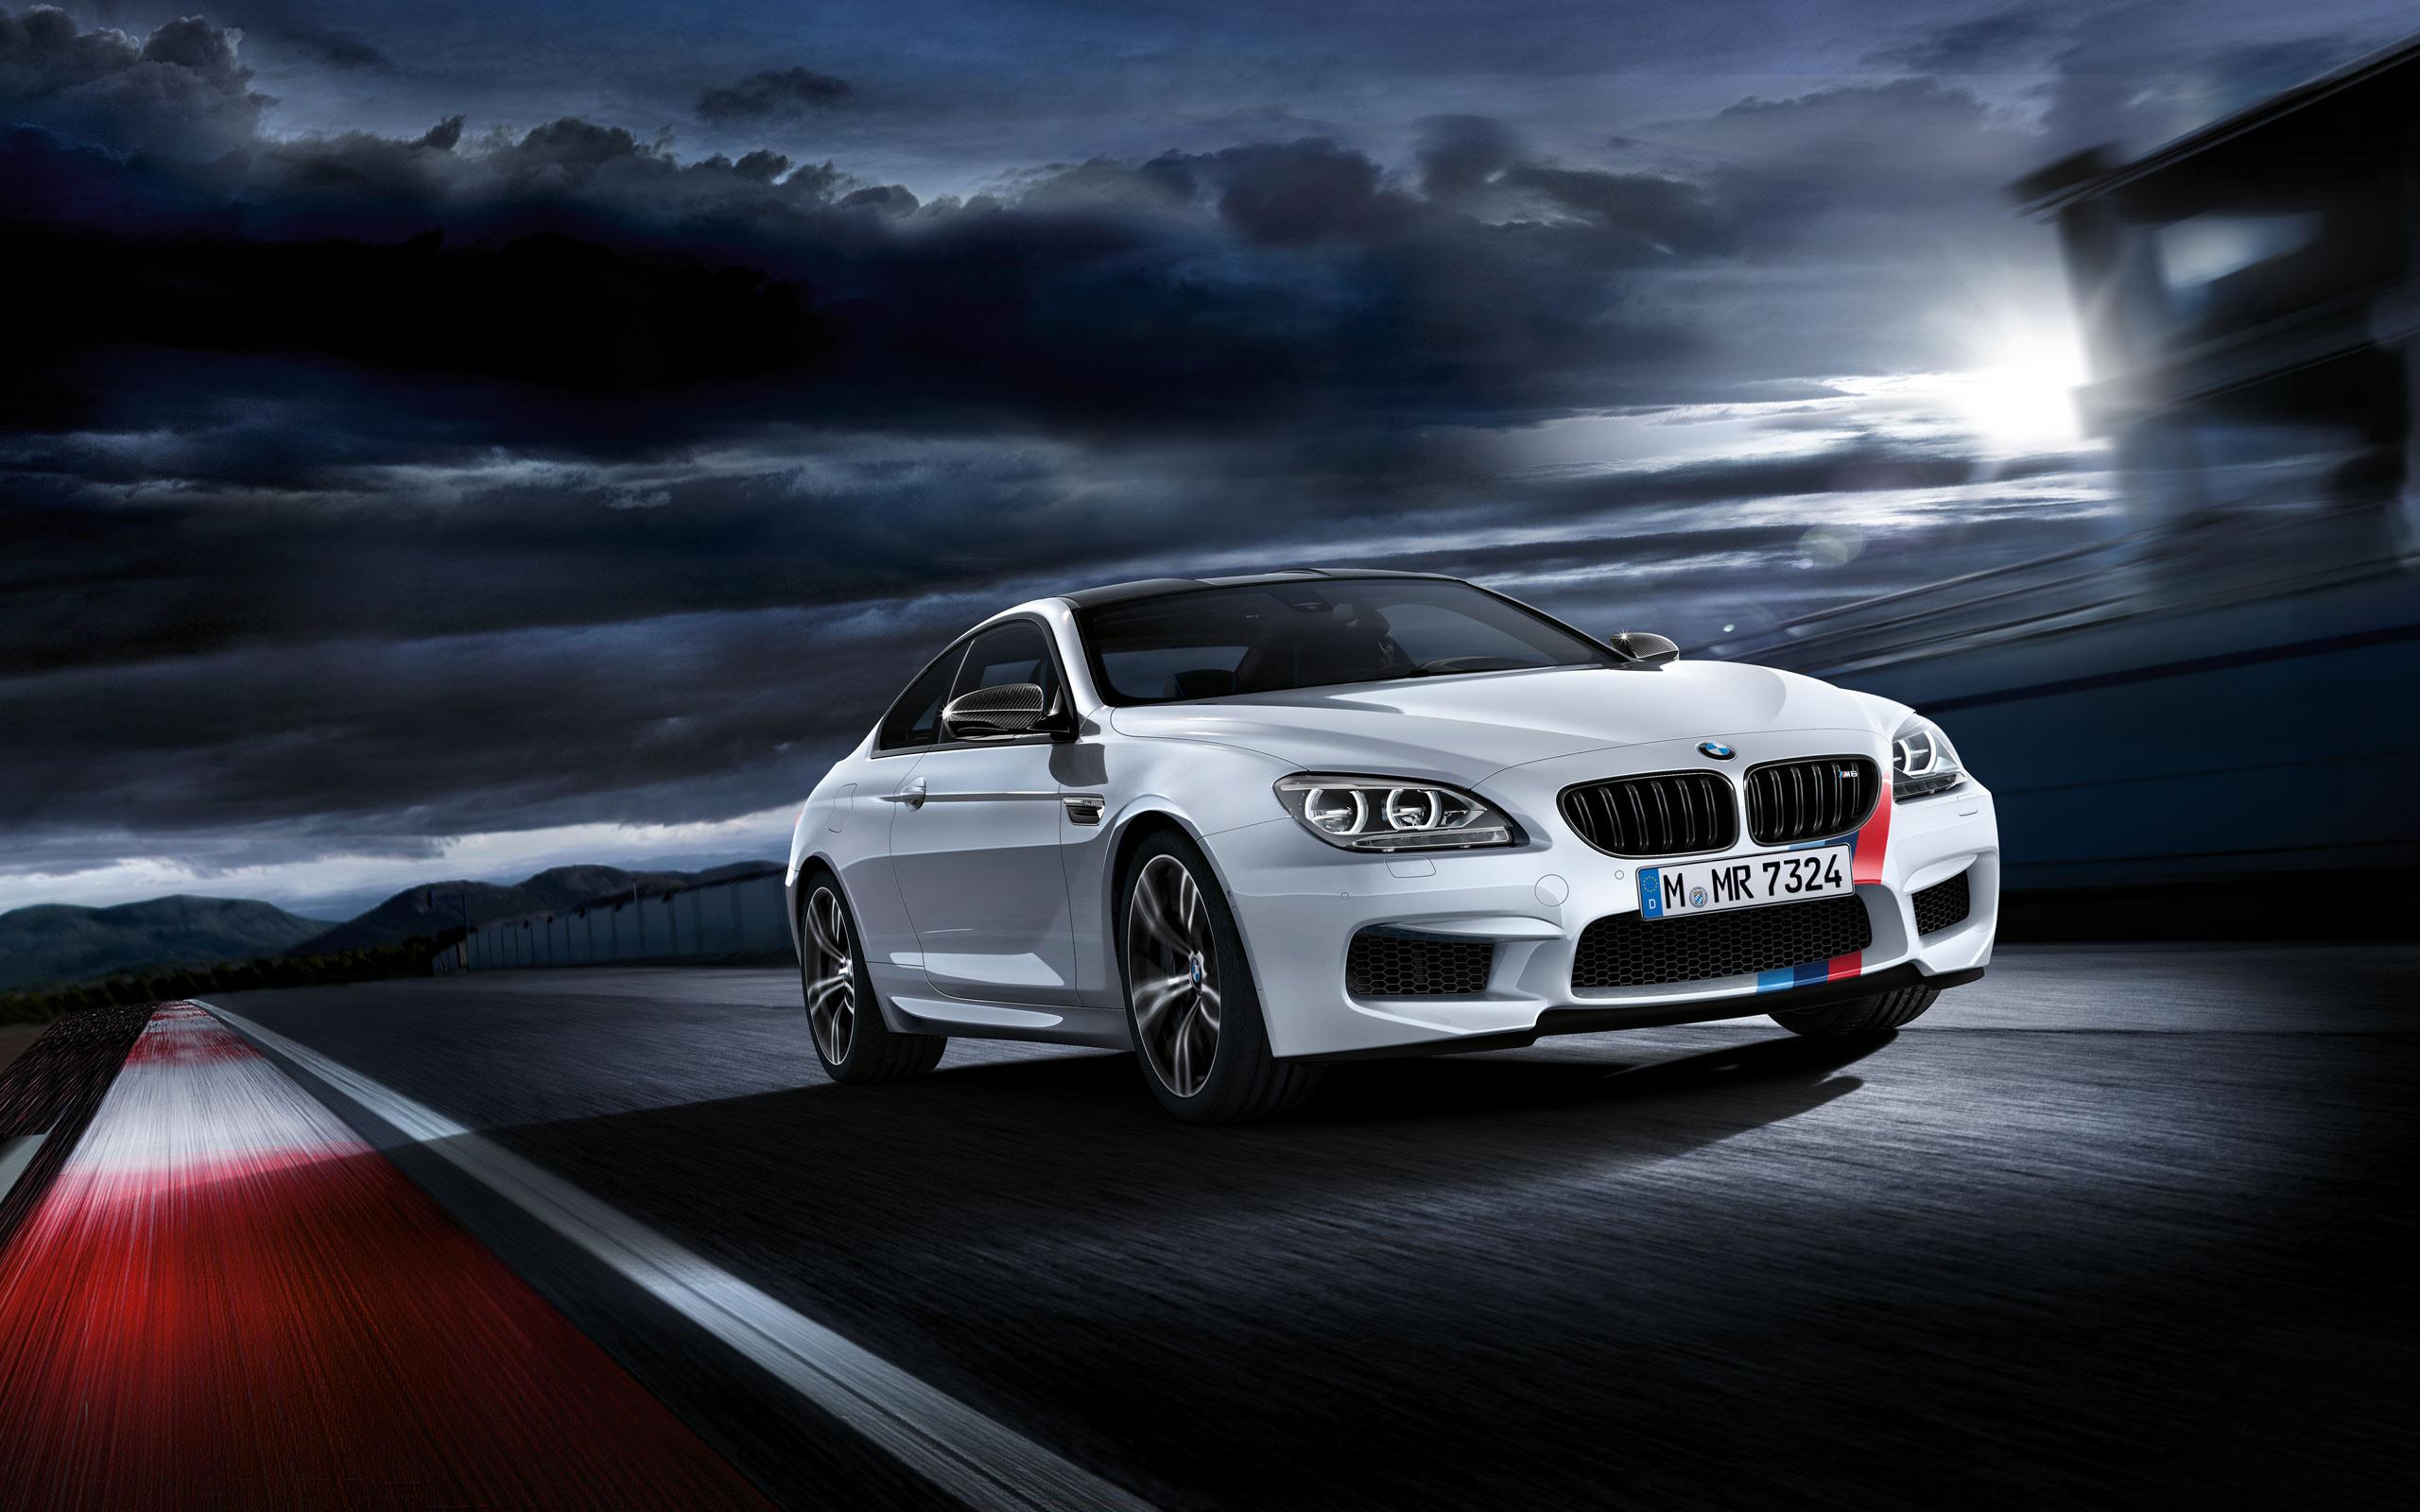 2560 x 1600 · jpeg - 2013 BMW M6 Wallpaper | HD Car Wallpapers | ID #3918